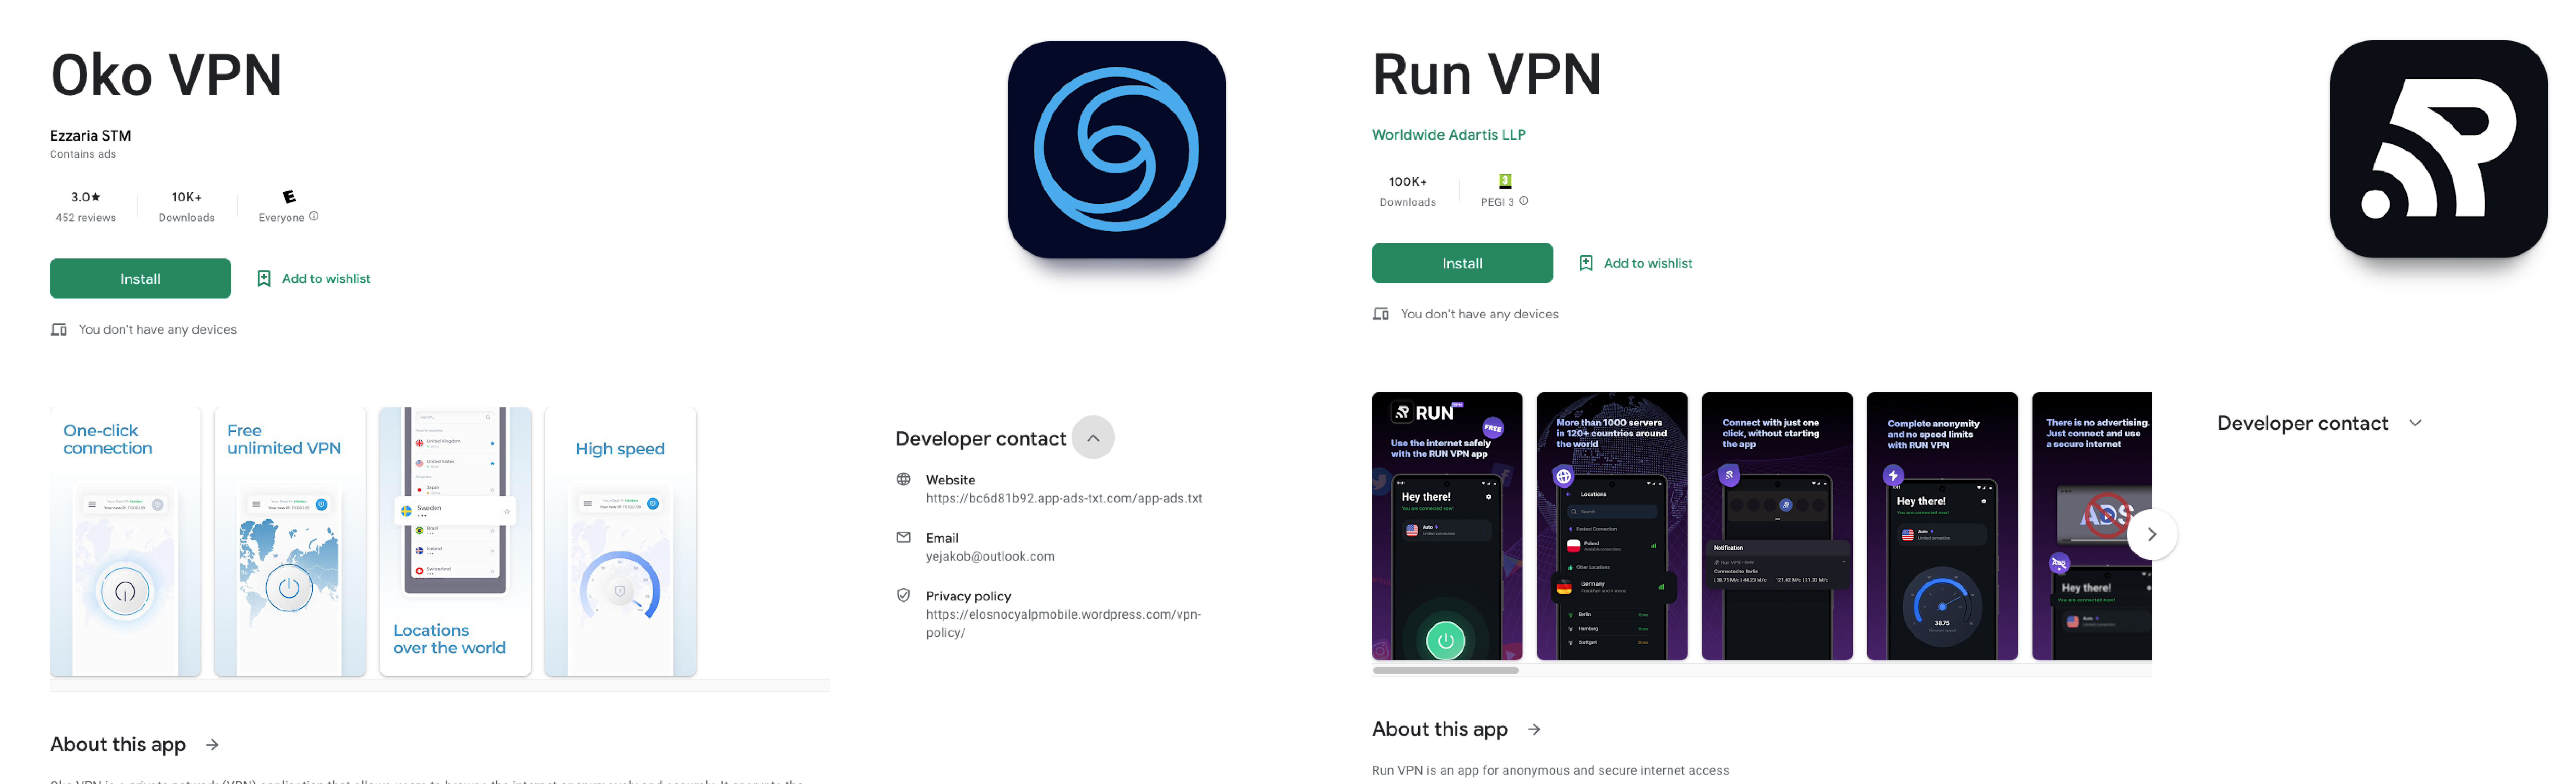 Revised VPN apps